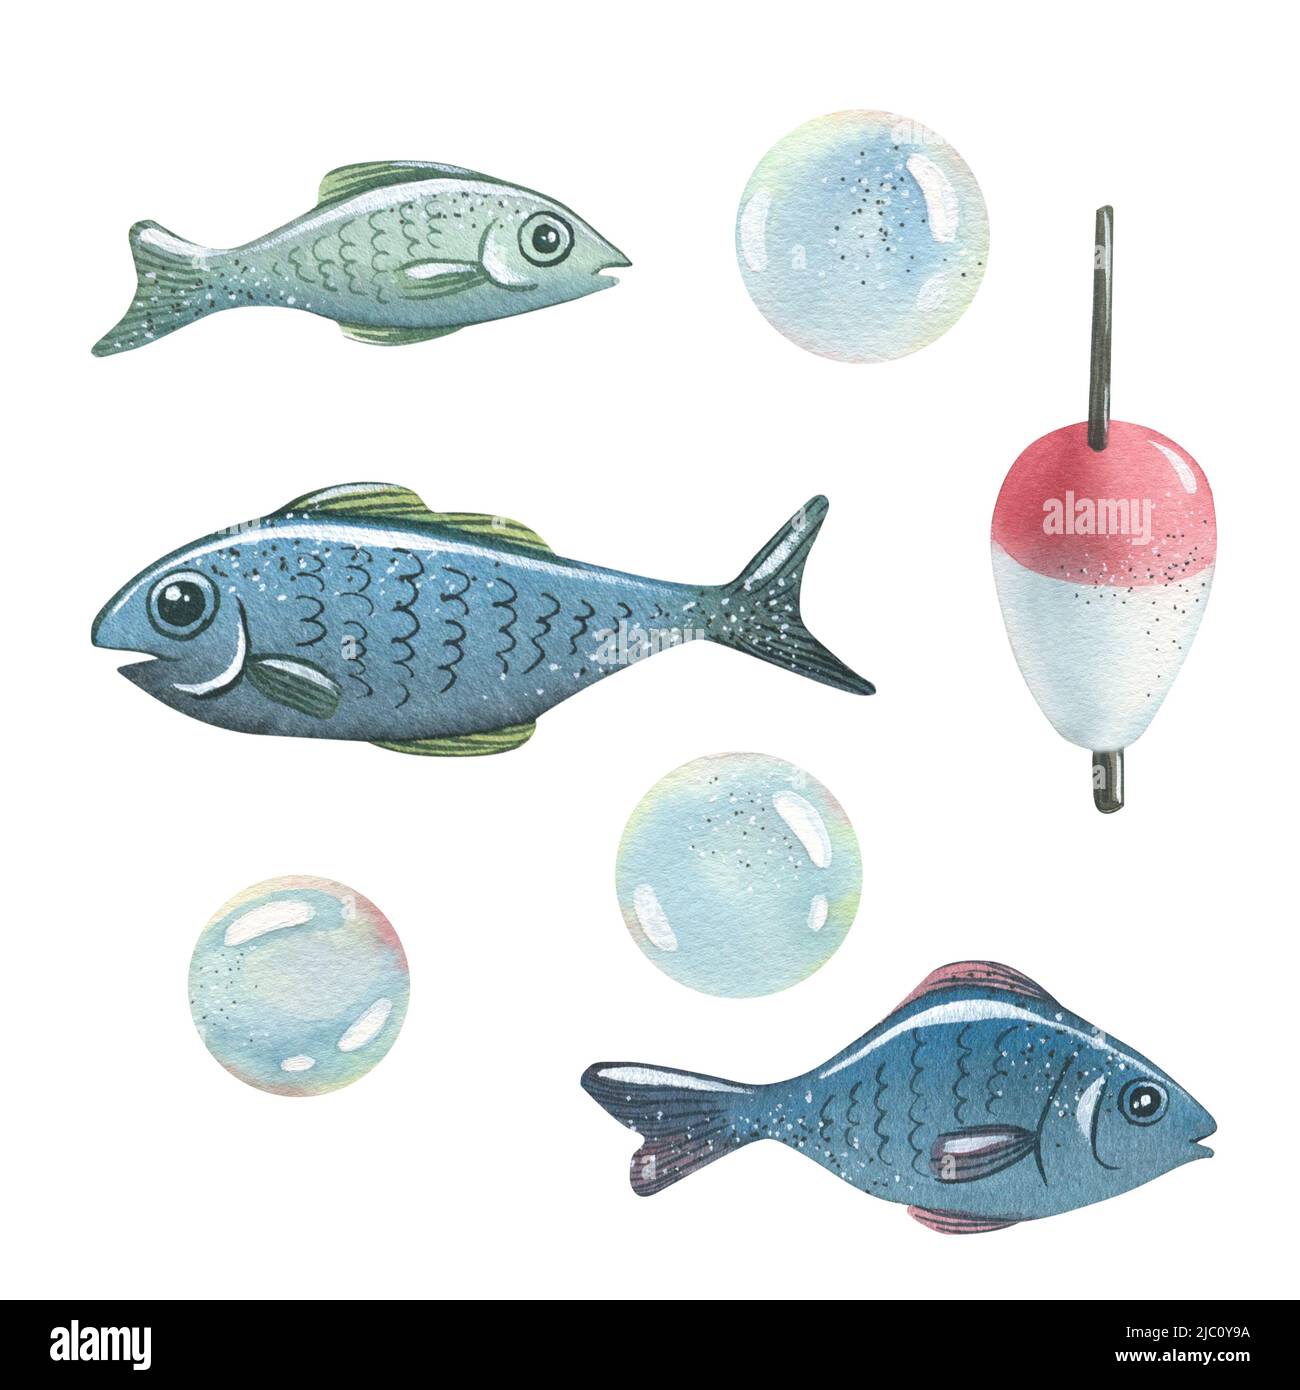 Aquarell-Illustration zum Thema Meeresfischen. Fisch, schwimmen, blasen. Kinder, Marine, Tourist. Für das Design druckt Muster Postkarten Stockfoto